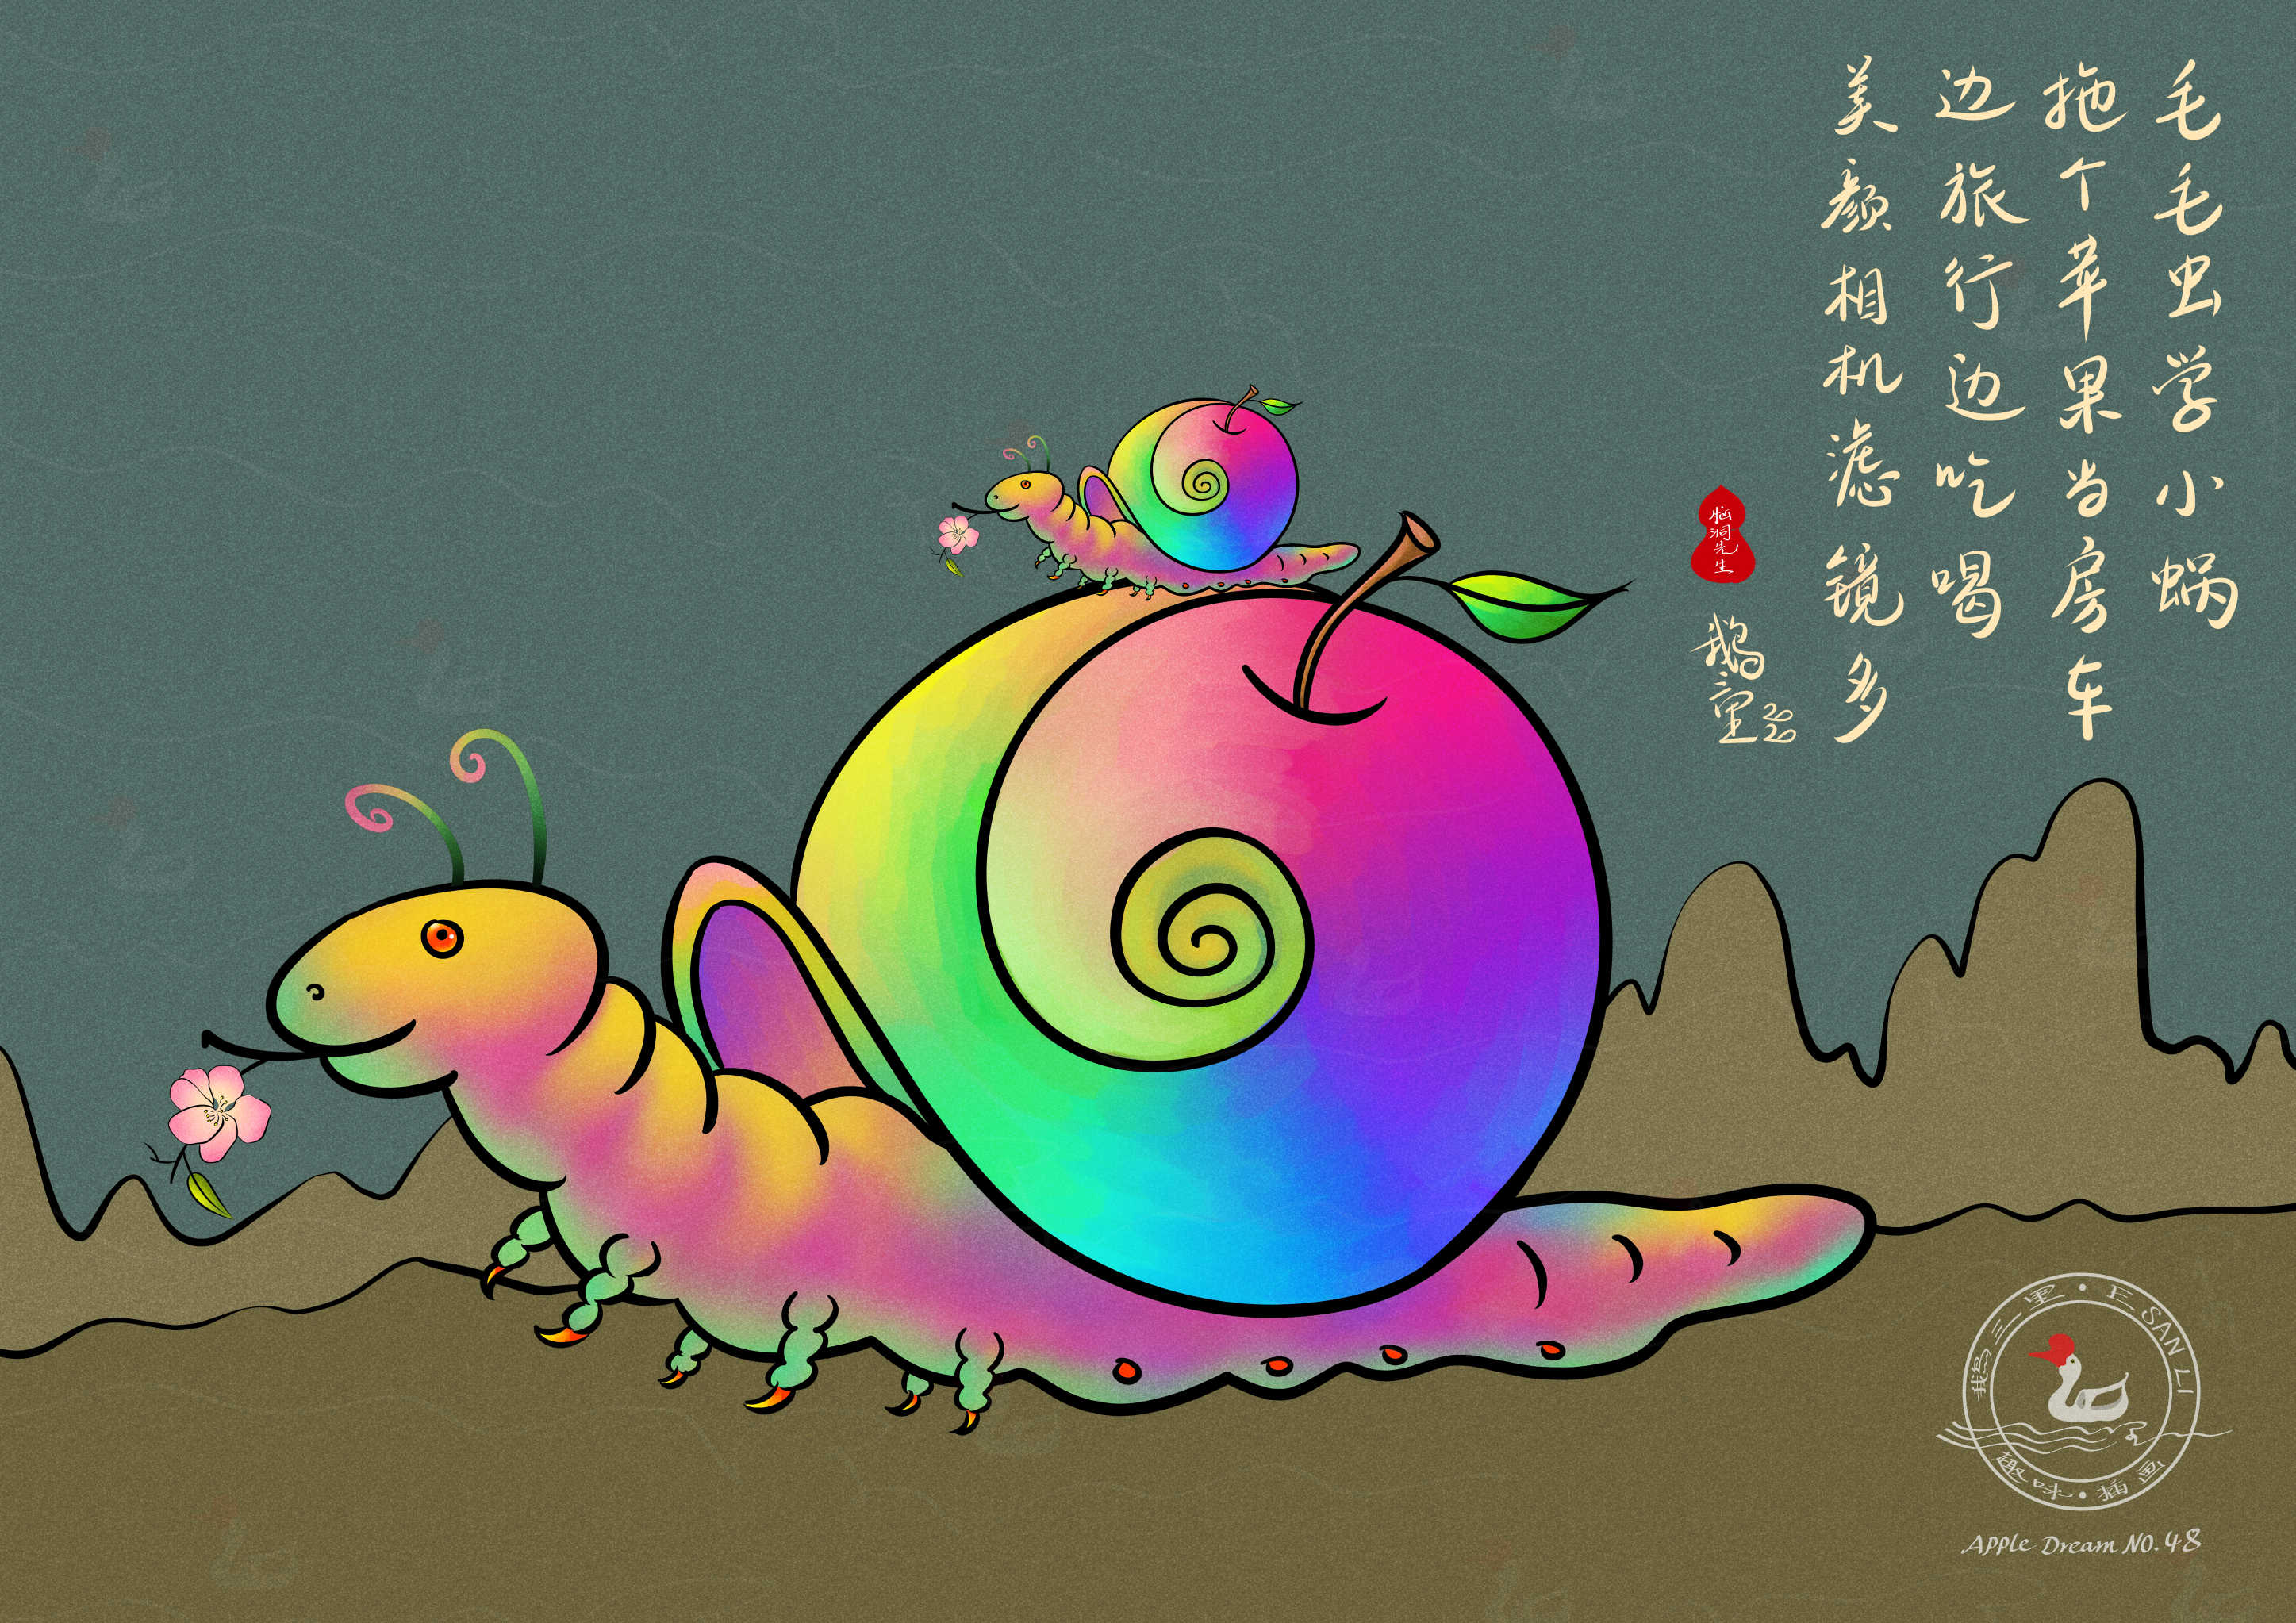 《蜗牛》: 毛毛虫学小蜗,拖个苹果当房车,边旅行边吃喝,美颜相机滤镜